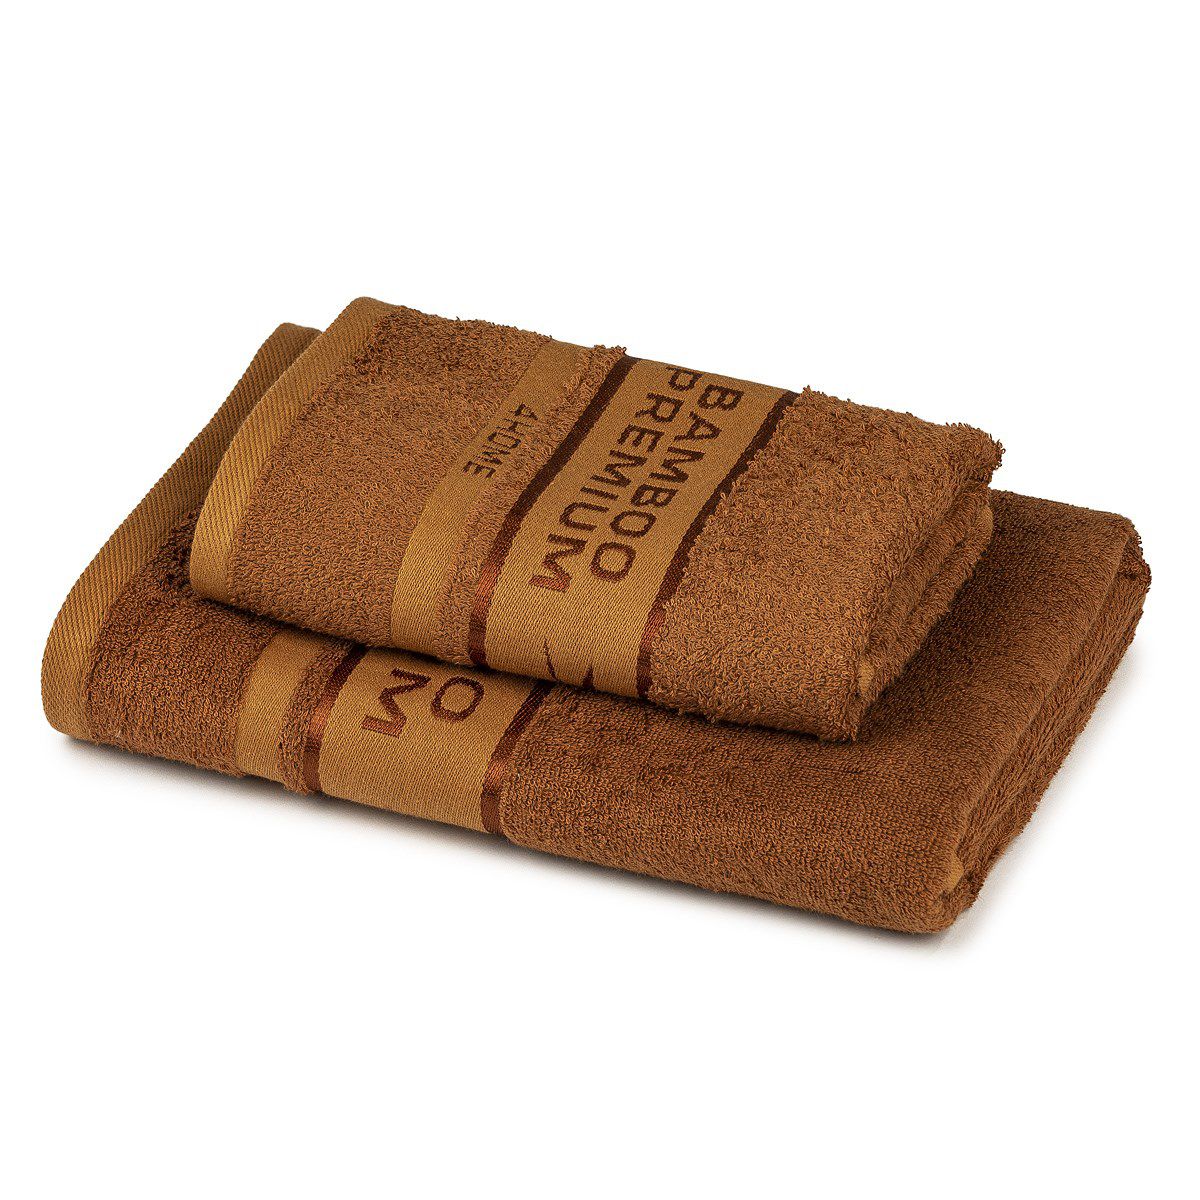 4Home Sada Bamboo Premium osuška a ručník hnědá, 70 x 140 cm, 50 x 100 cm - 4home.cz